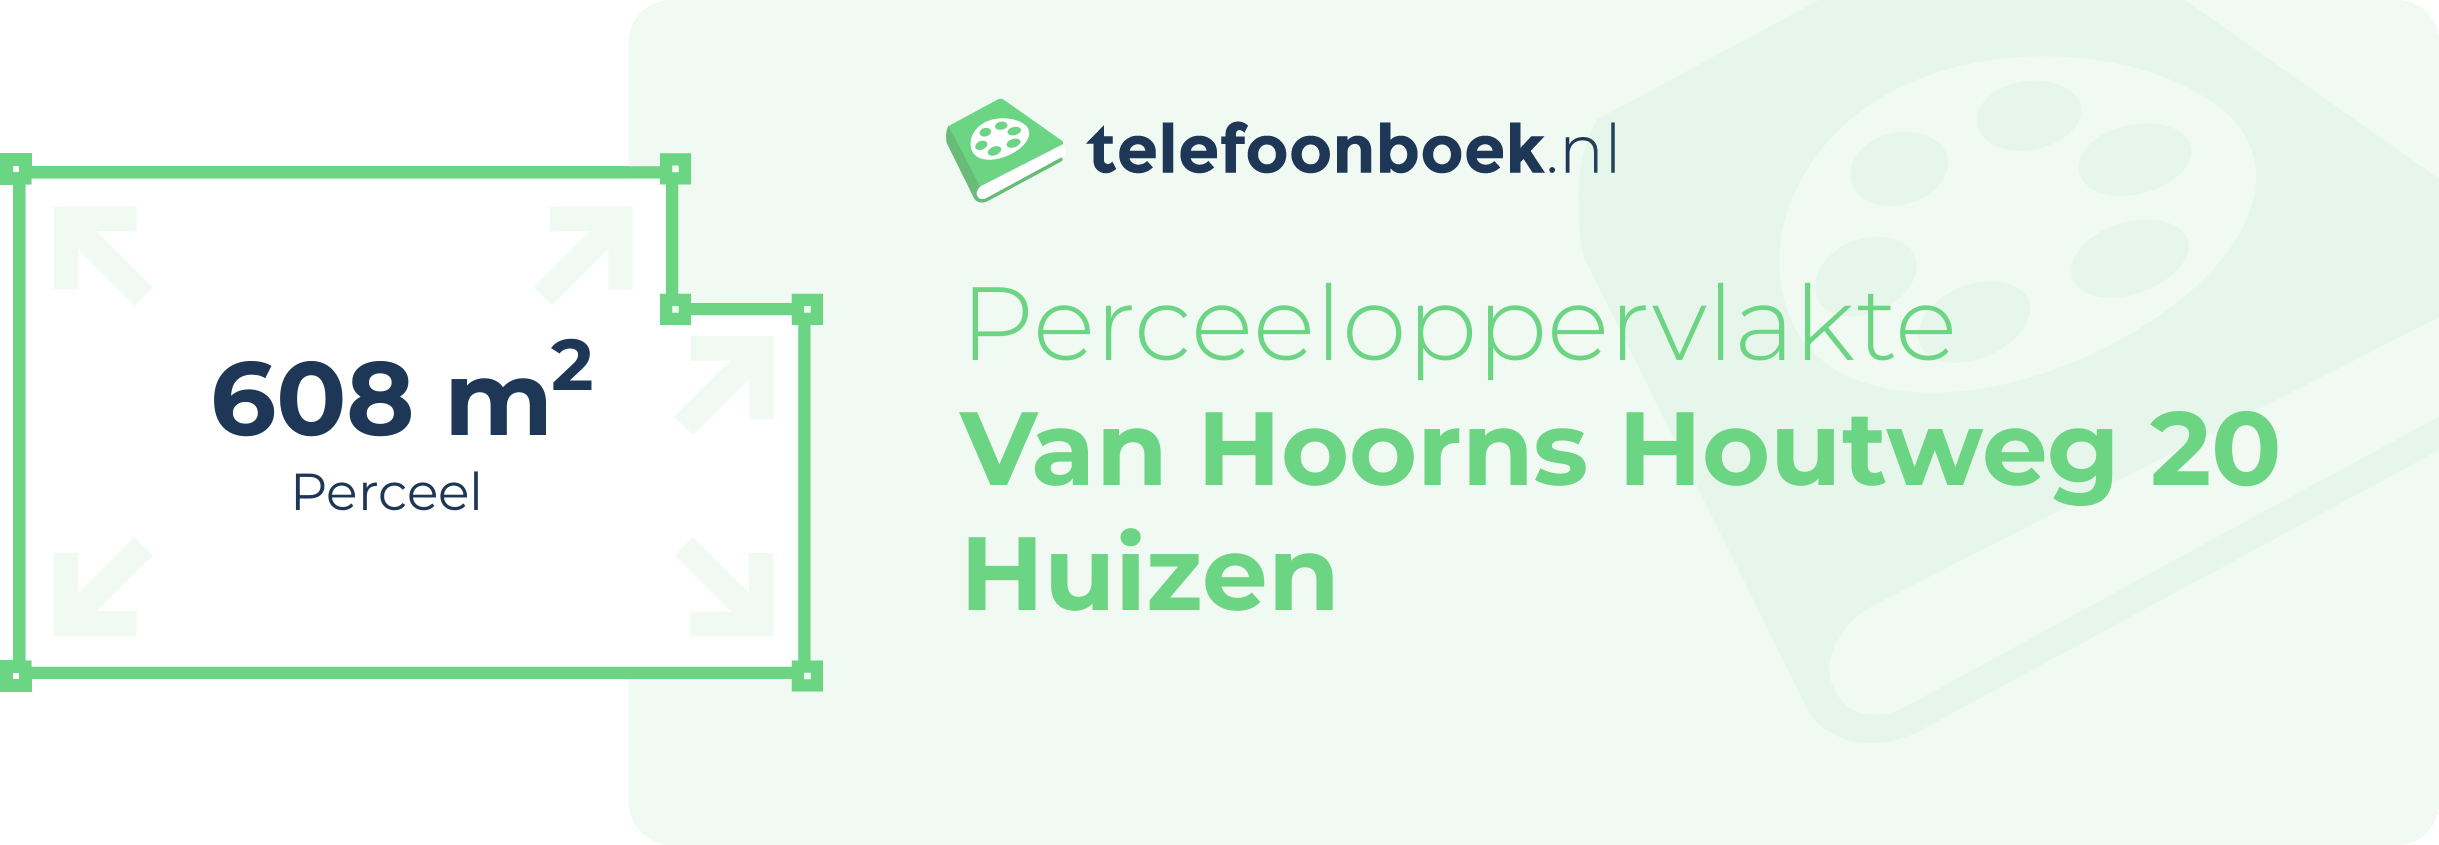 Perceeloppervlakte Van Hoorns Houtweg 20 Huizen